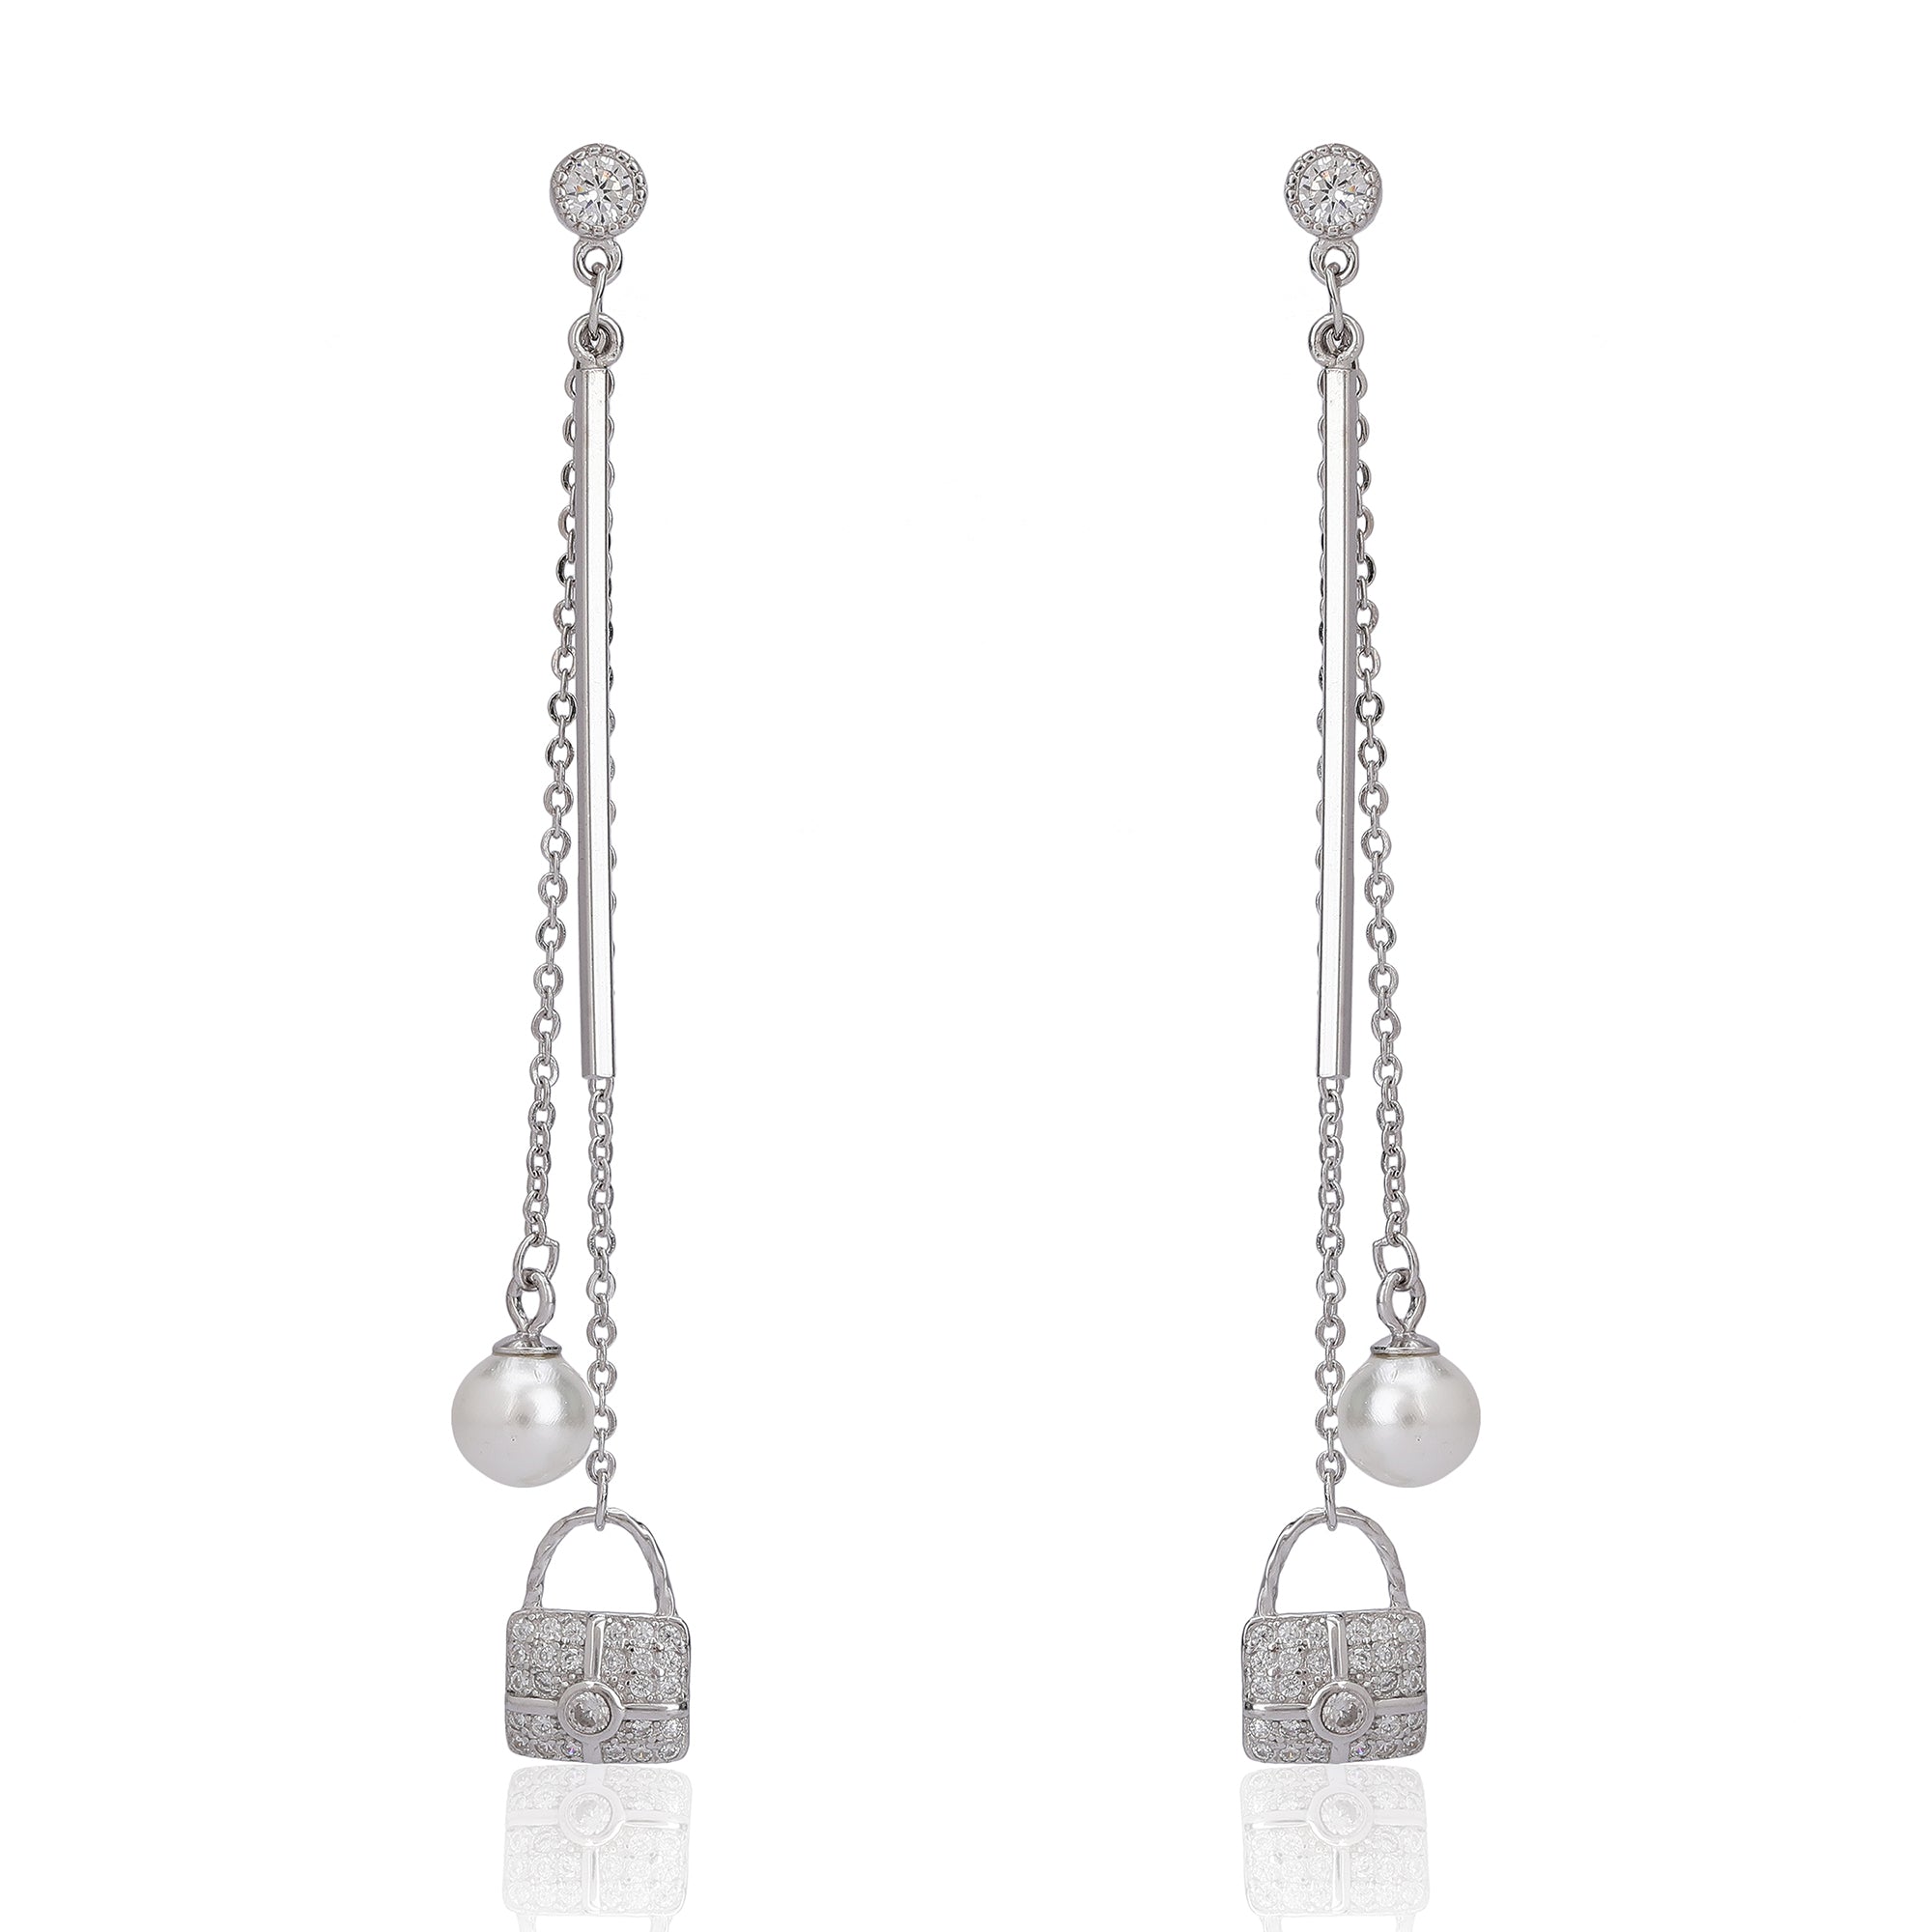 Silver lock style long chain earring